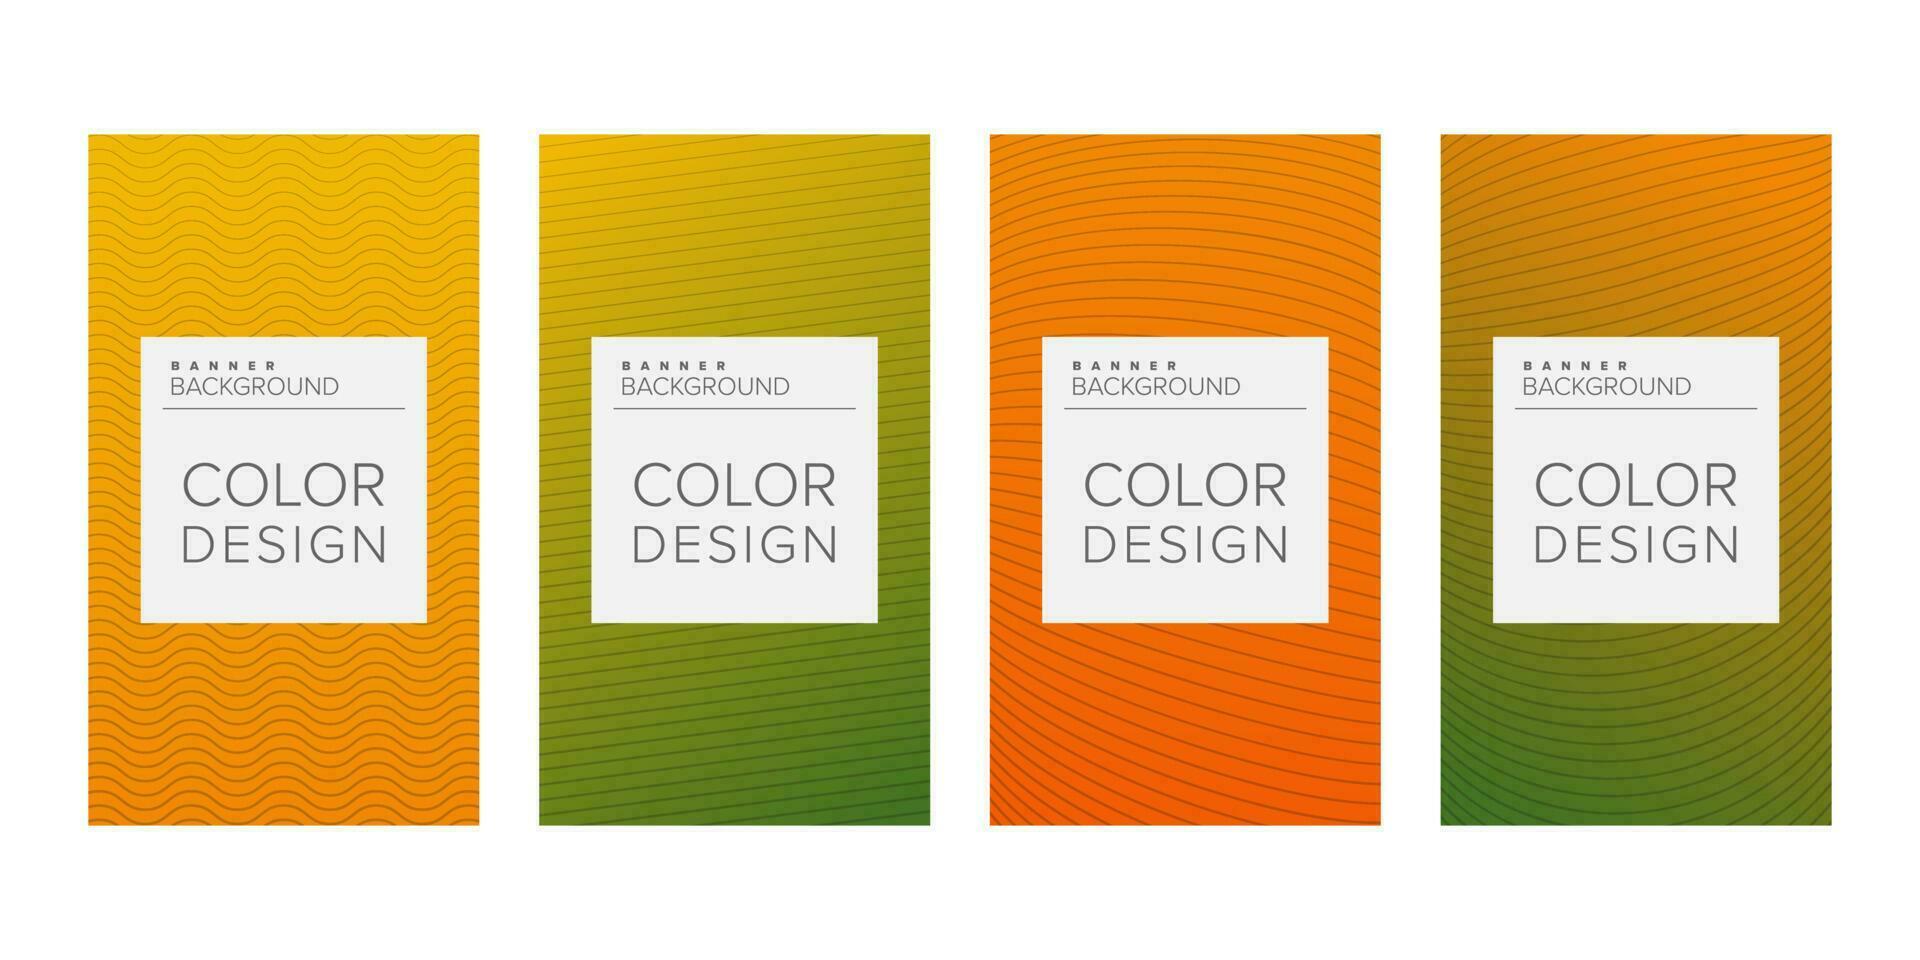 abstract achtergrond banier vector ontwerp sjabloon, banier voor afdrukken of web banier met kleurrijk